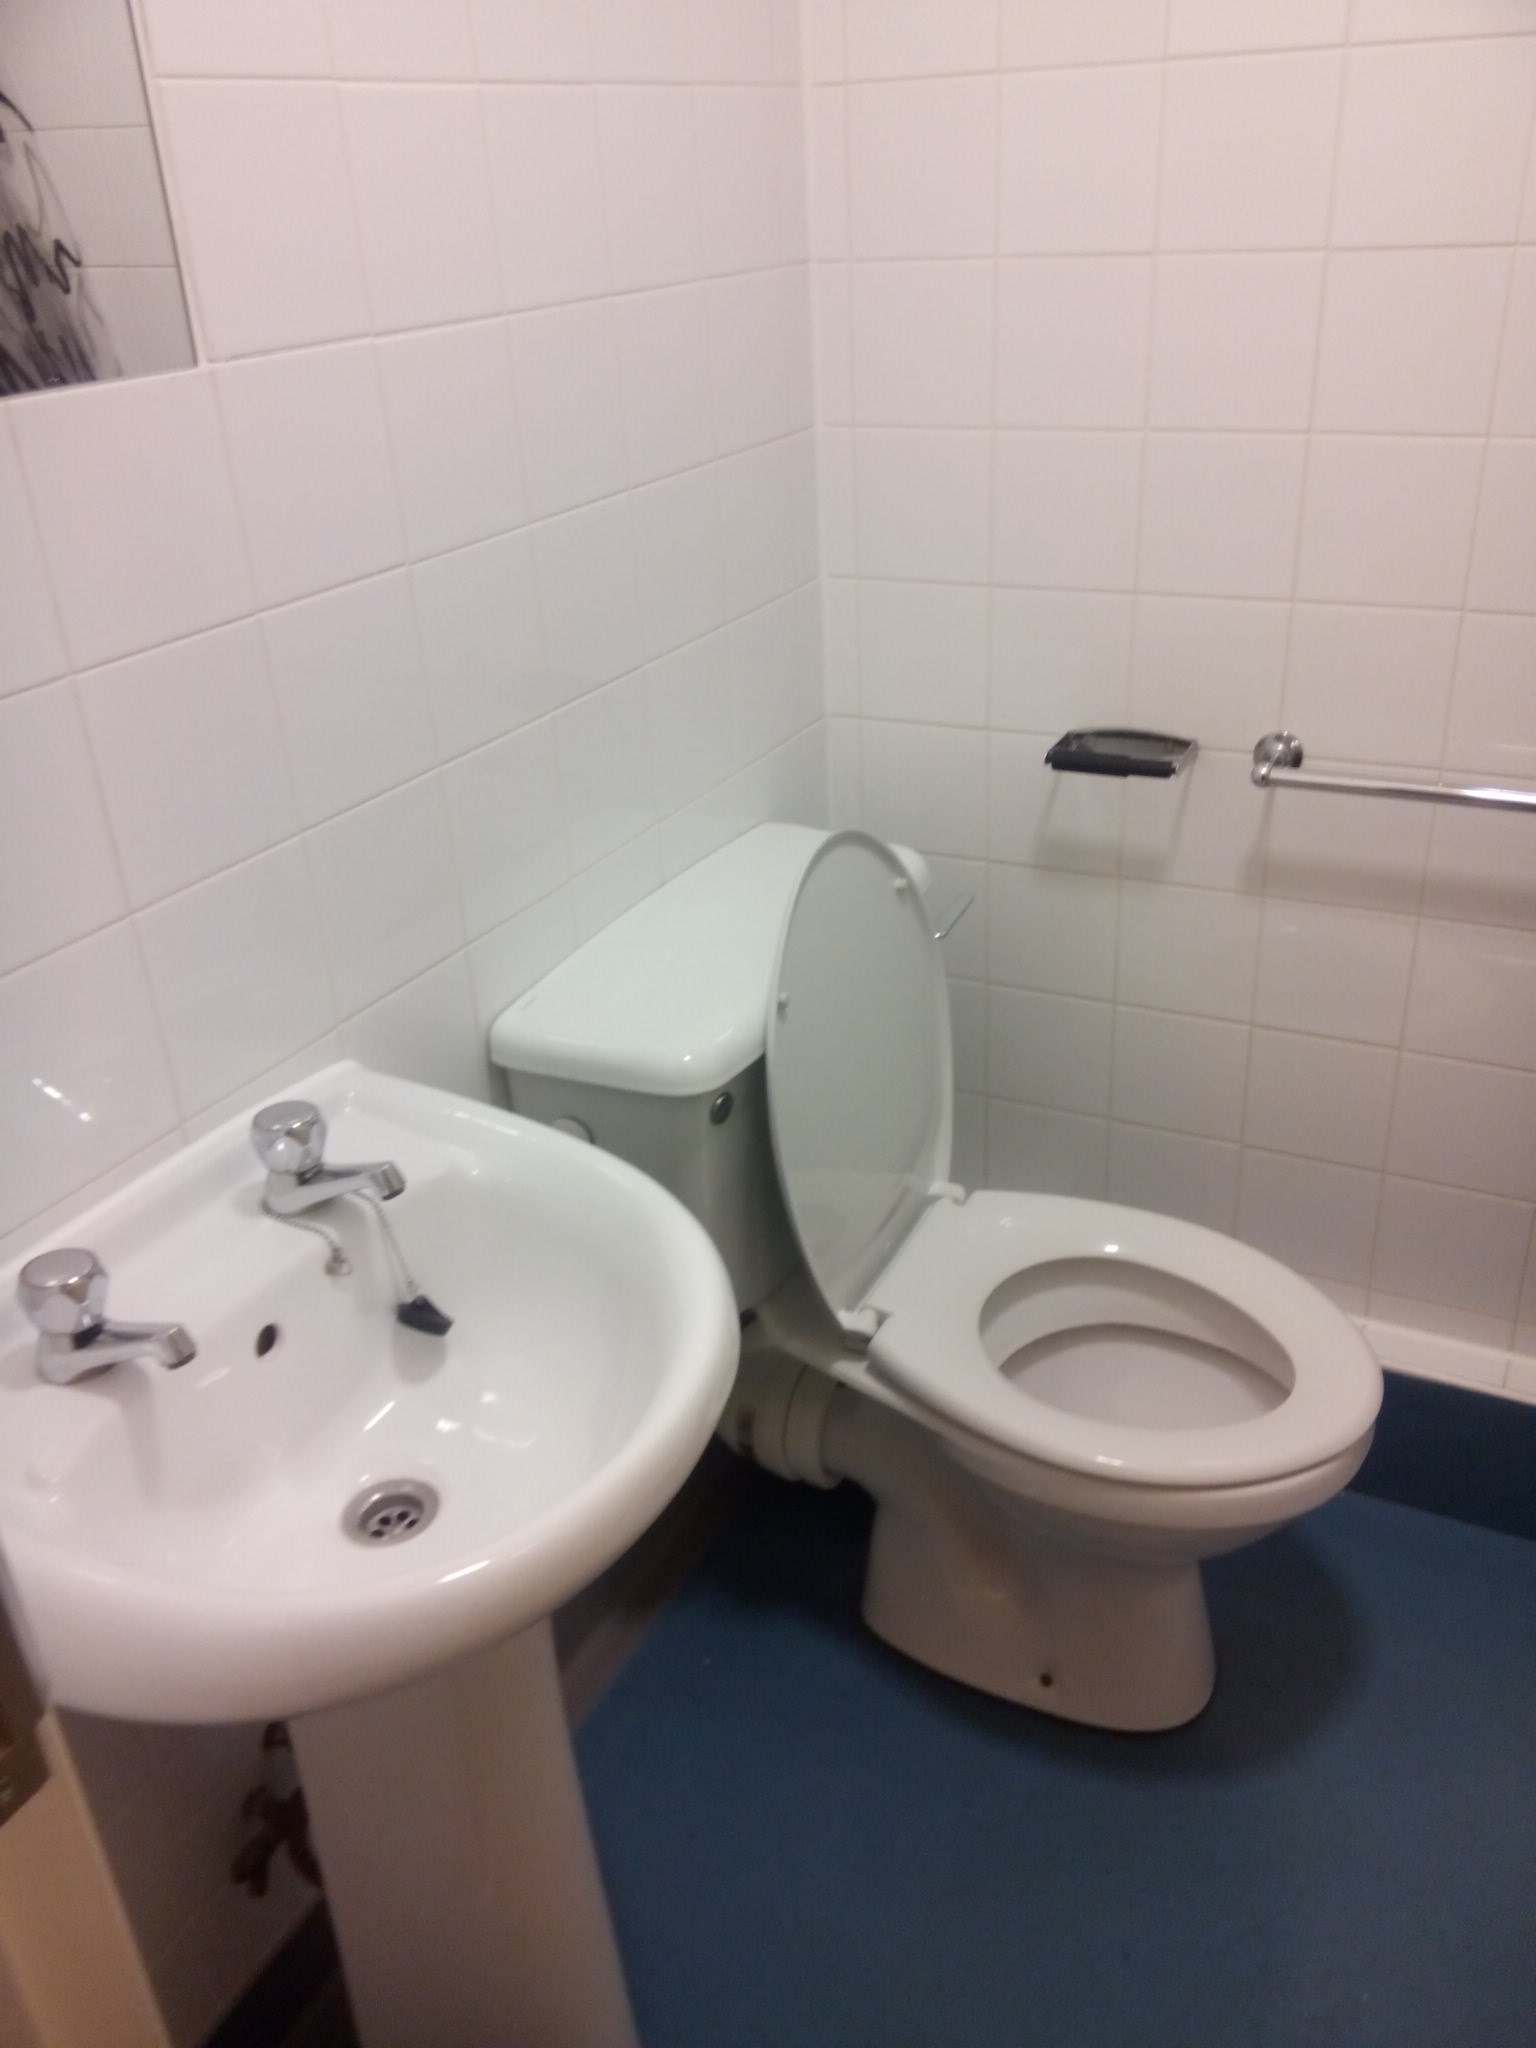 En-suite bathroom showing sink, toilet and towel rail. All bedrooms are en-suite.